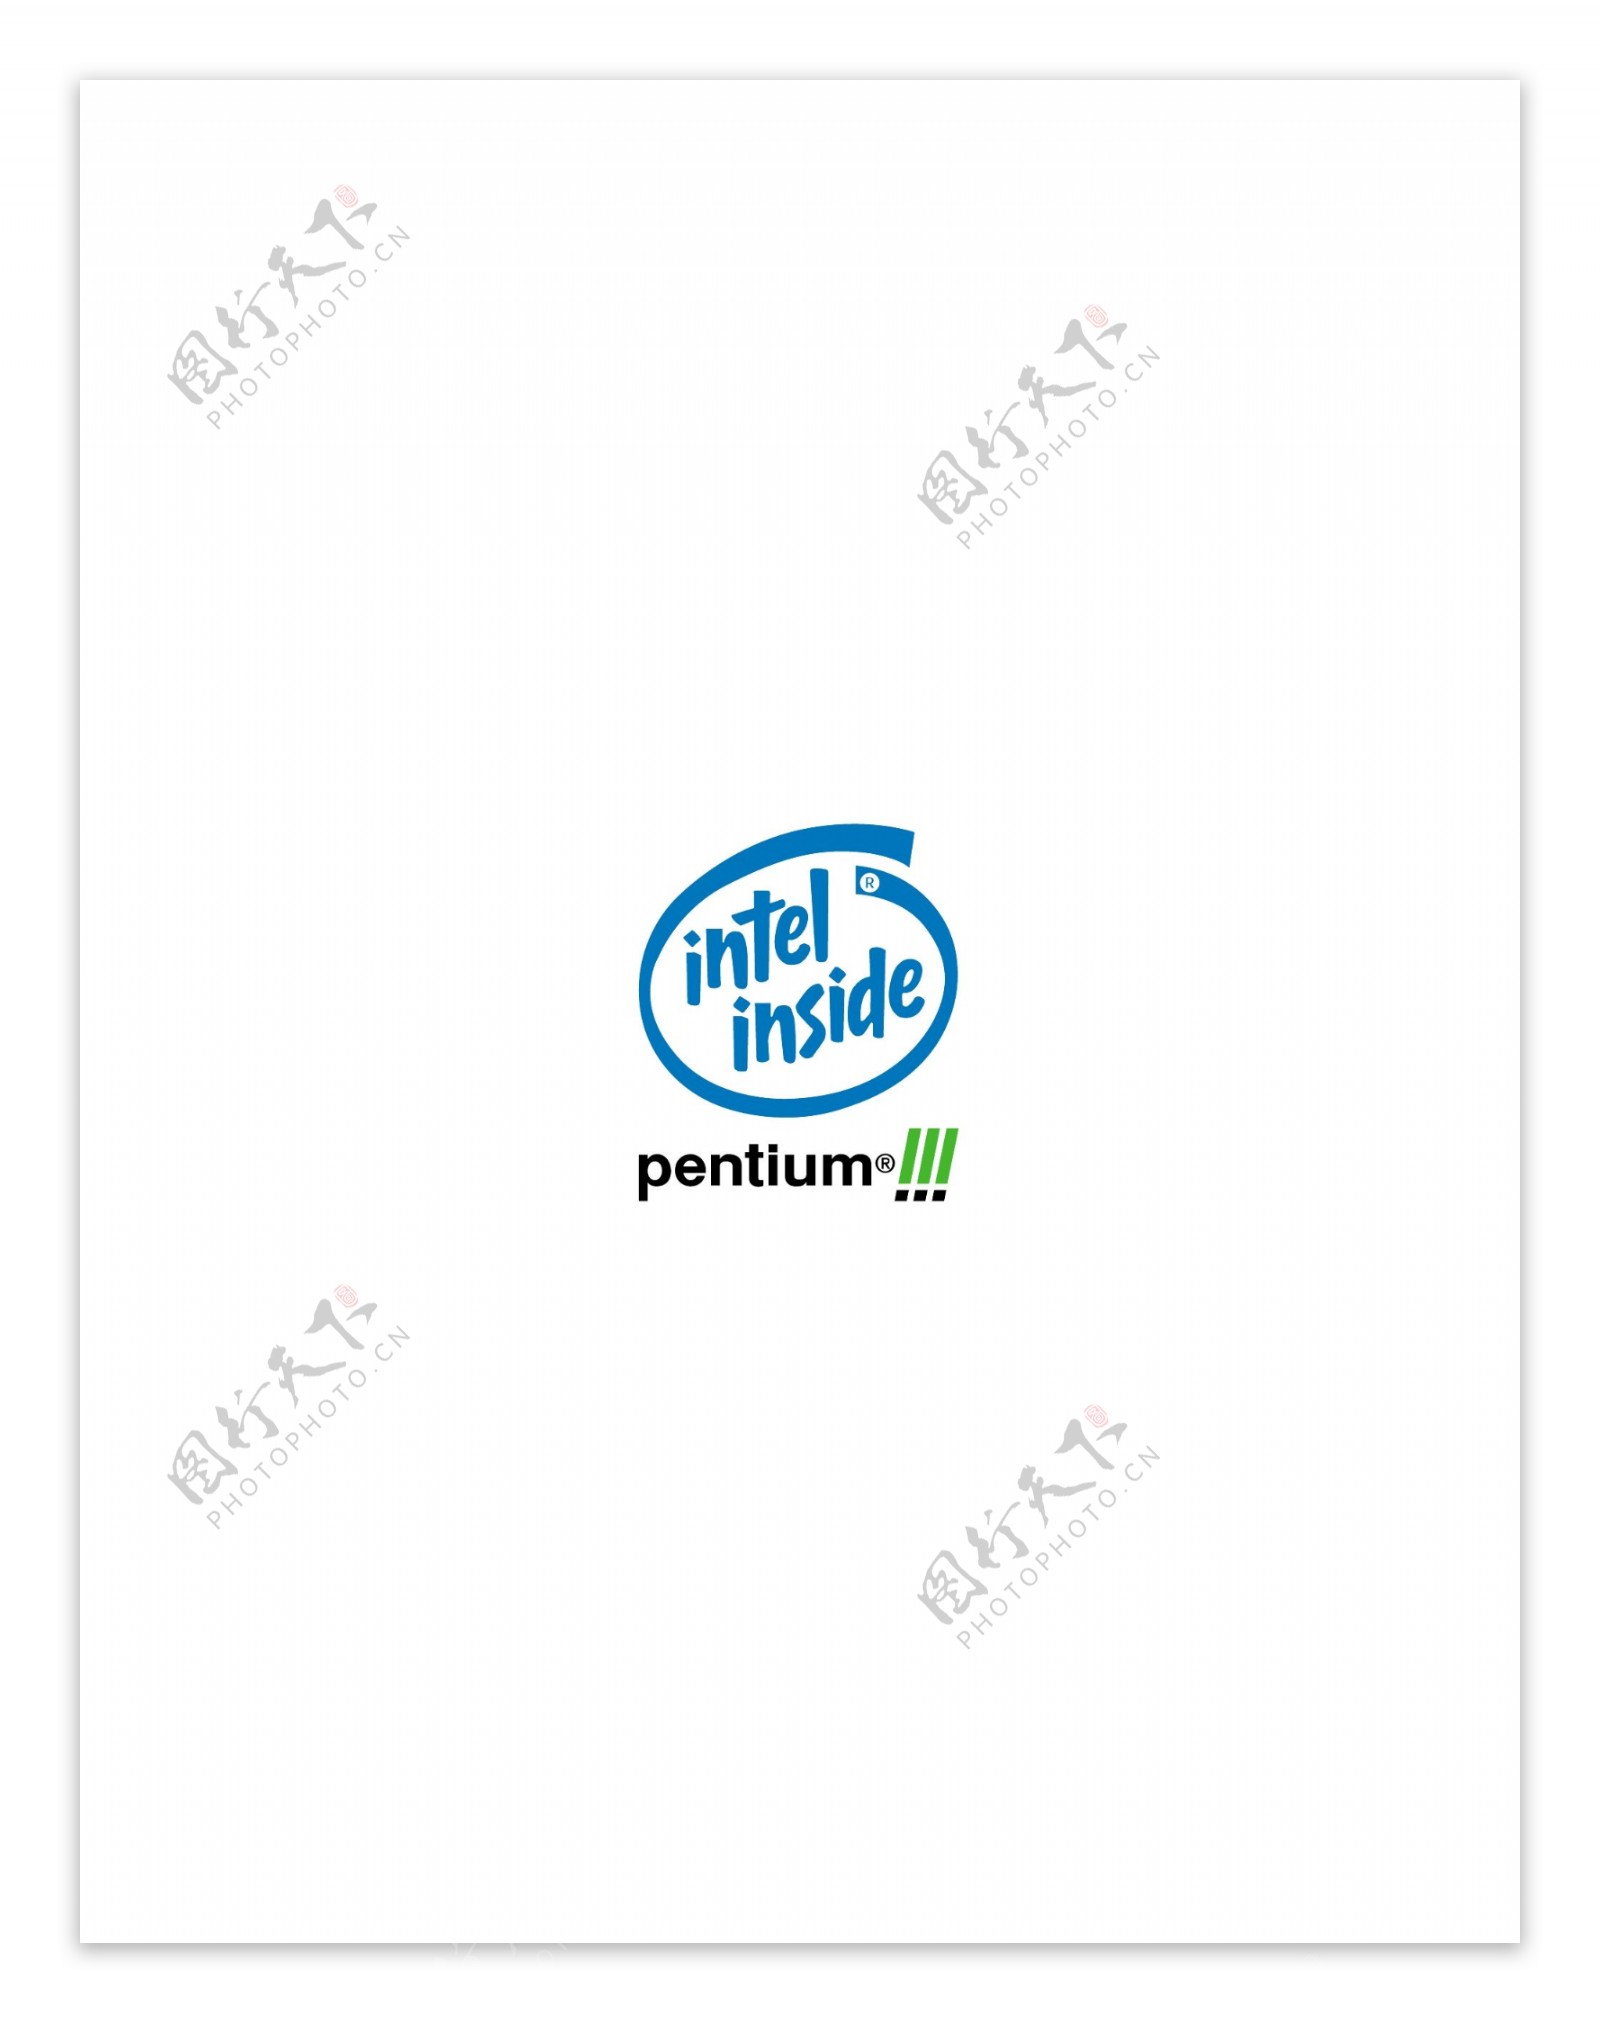 PentiumIIIProcessorlogo设计欣赏软件和硬件公司标志PentiumIIIProcessor下载标志设计欣赏